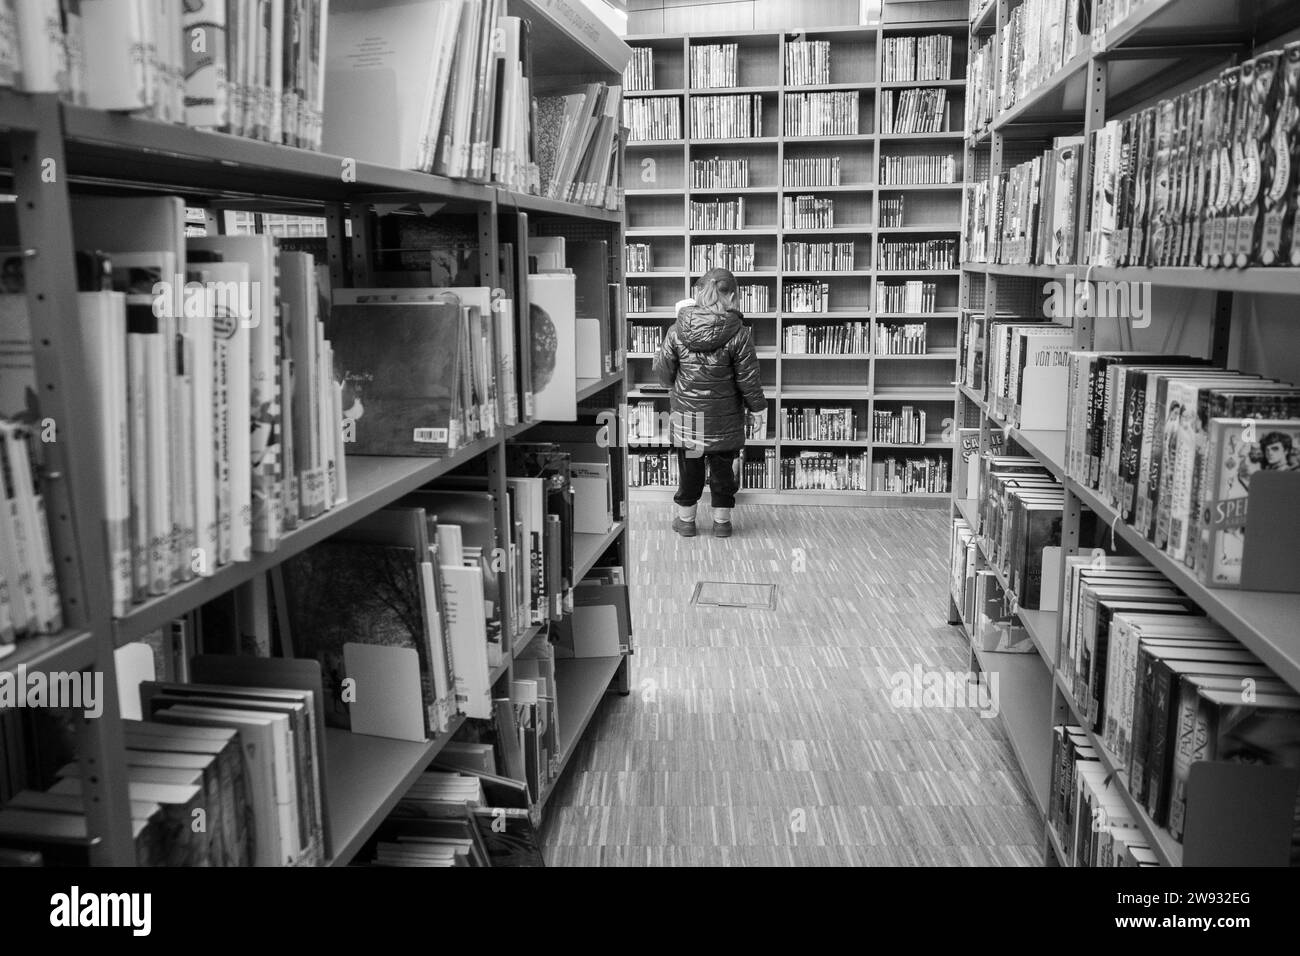 Un enfant de 4 ans choisit un livre dans une bibliothèque. Banque D'Images